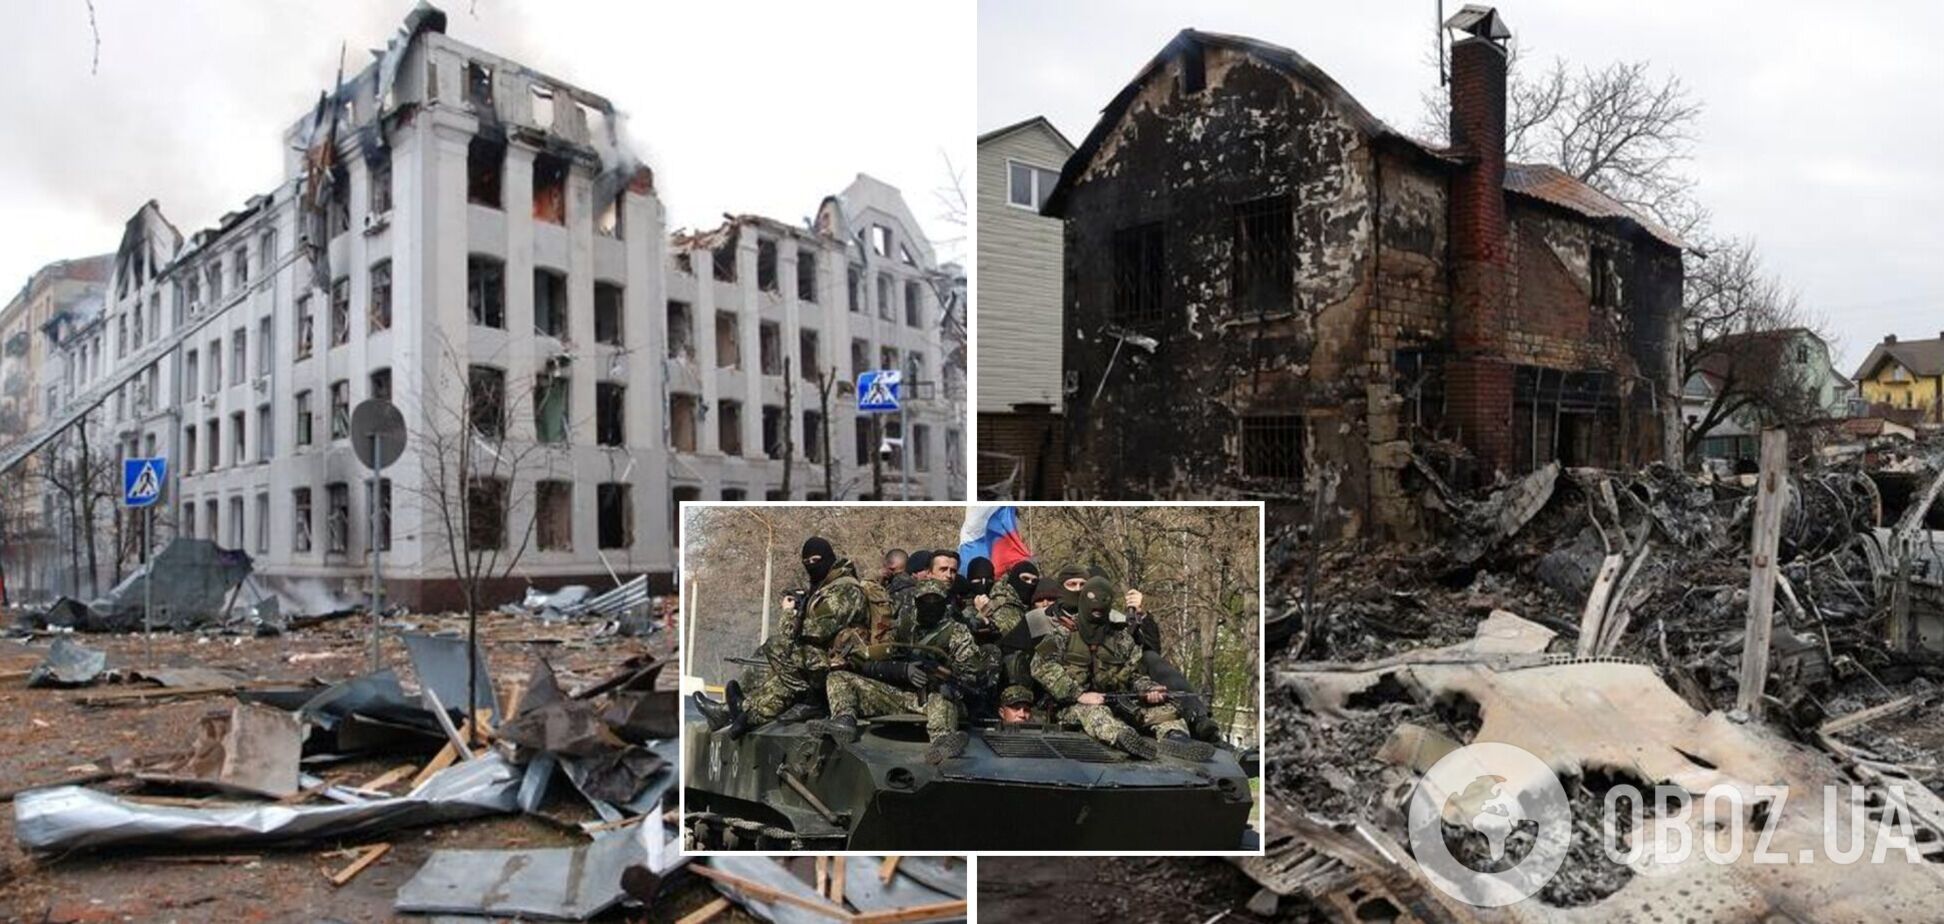 Российские оккупанты в перерывах между стрельбой и бомбардировками в Украине грабят магазины. Видео